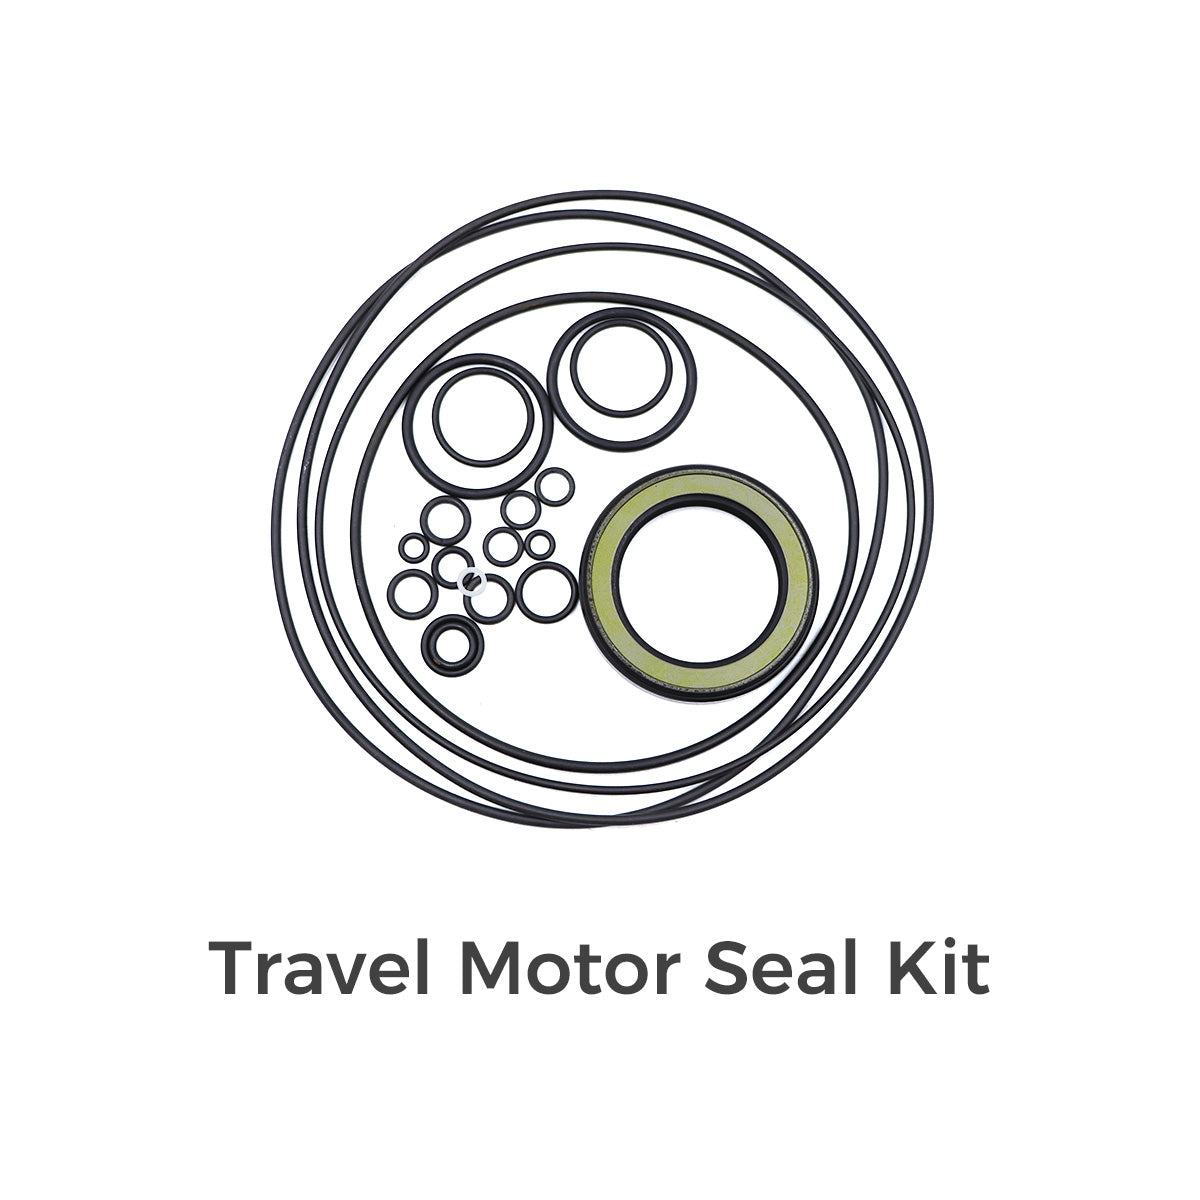 Seal Kits for Komatsu PC200-1 Excavator - Sinocmp